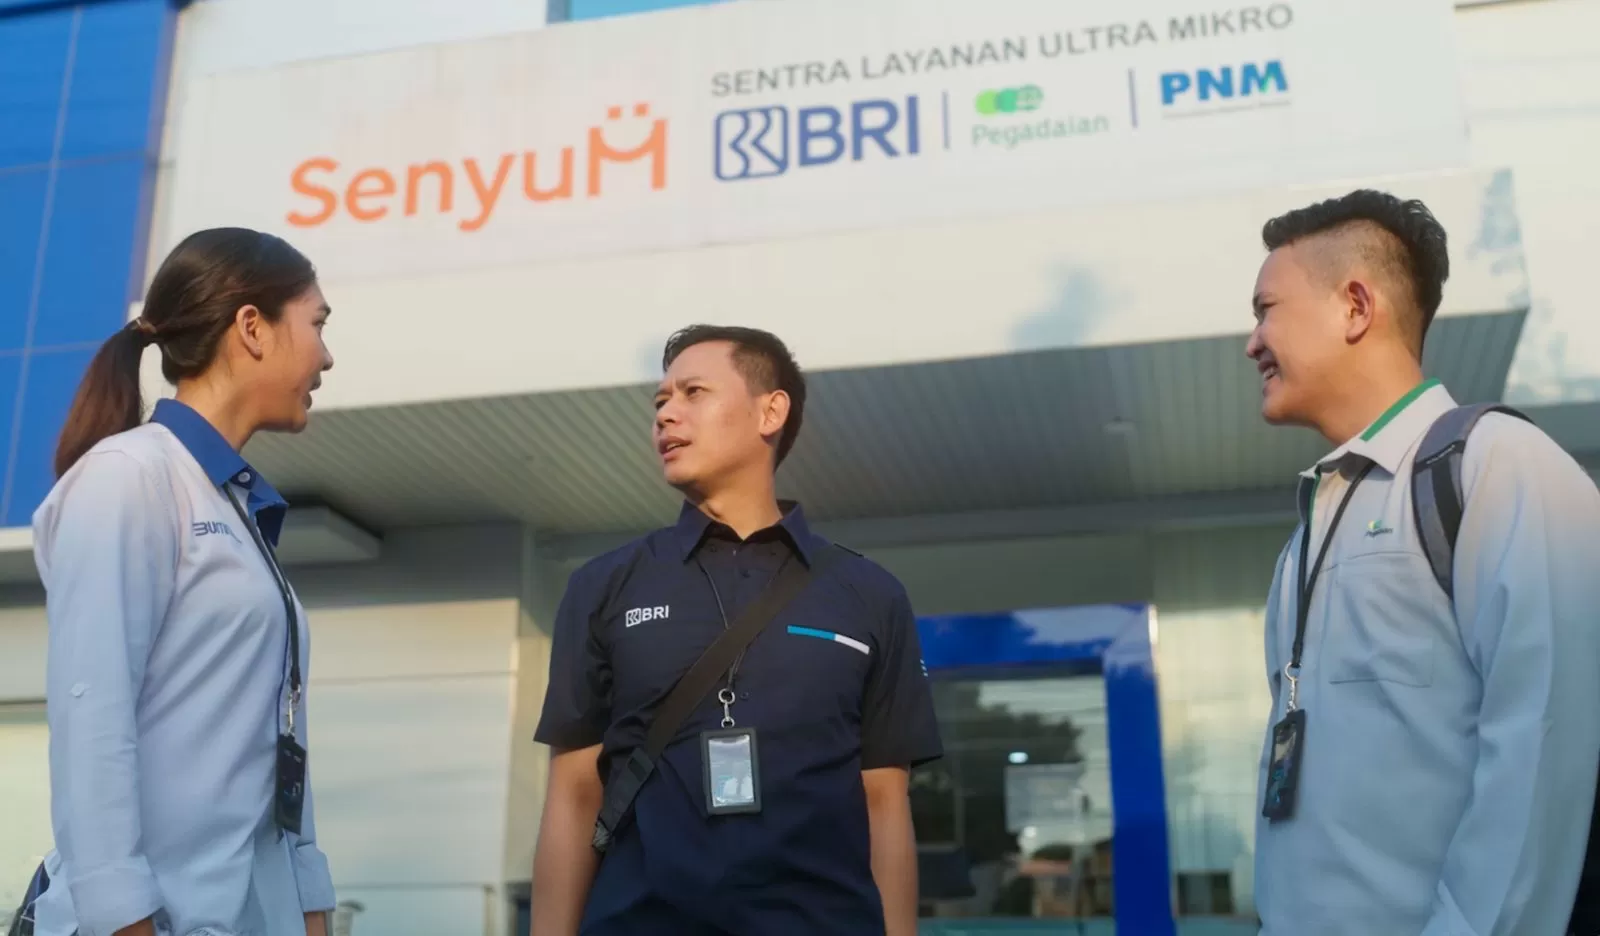 Holding Ultra Mikro BRI Group Perkuat Akses Keuangan Masyarakat Unbankable, Dukung Indonesia Emas 2045